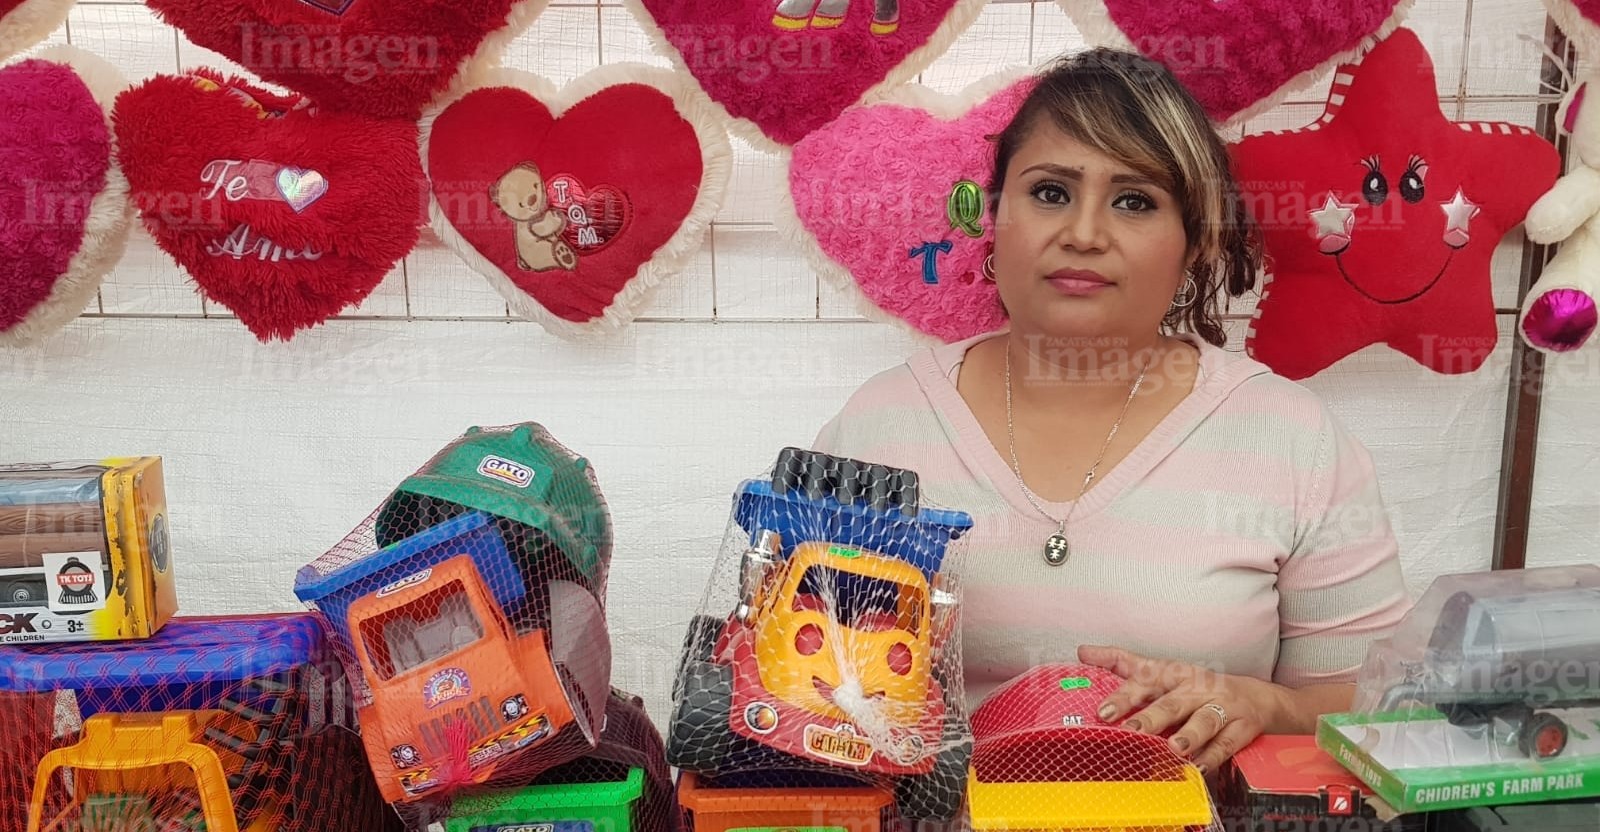 Esta mujer emprendedora tiene ya 15 años dedicada a vender juguetes en esta época. | Foto: Ángel Martínez.